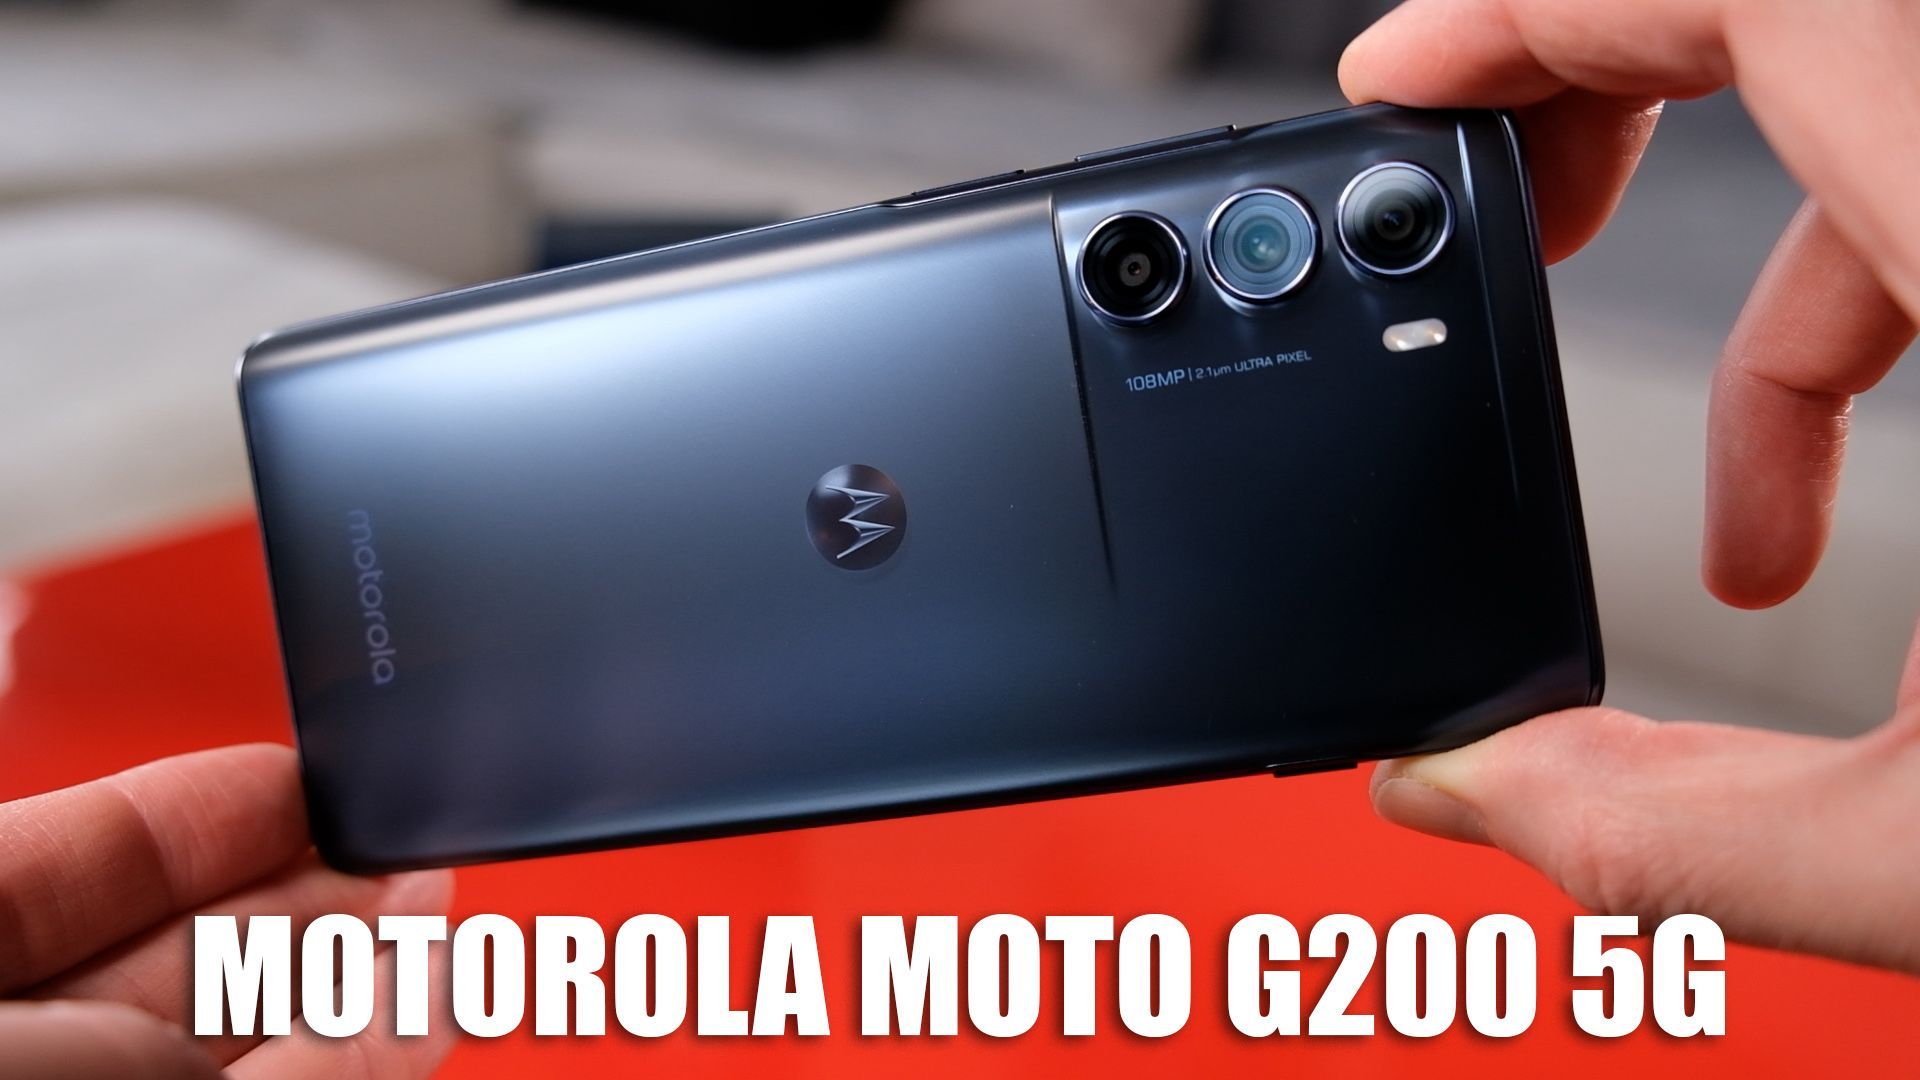 Viel Leistung für nicht soviel Geld: Das Motorola Moto G200 5G im Test